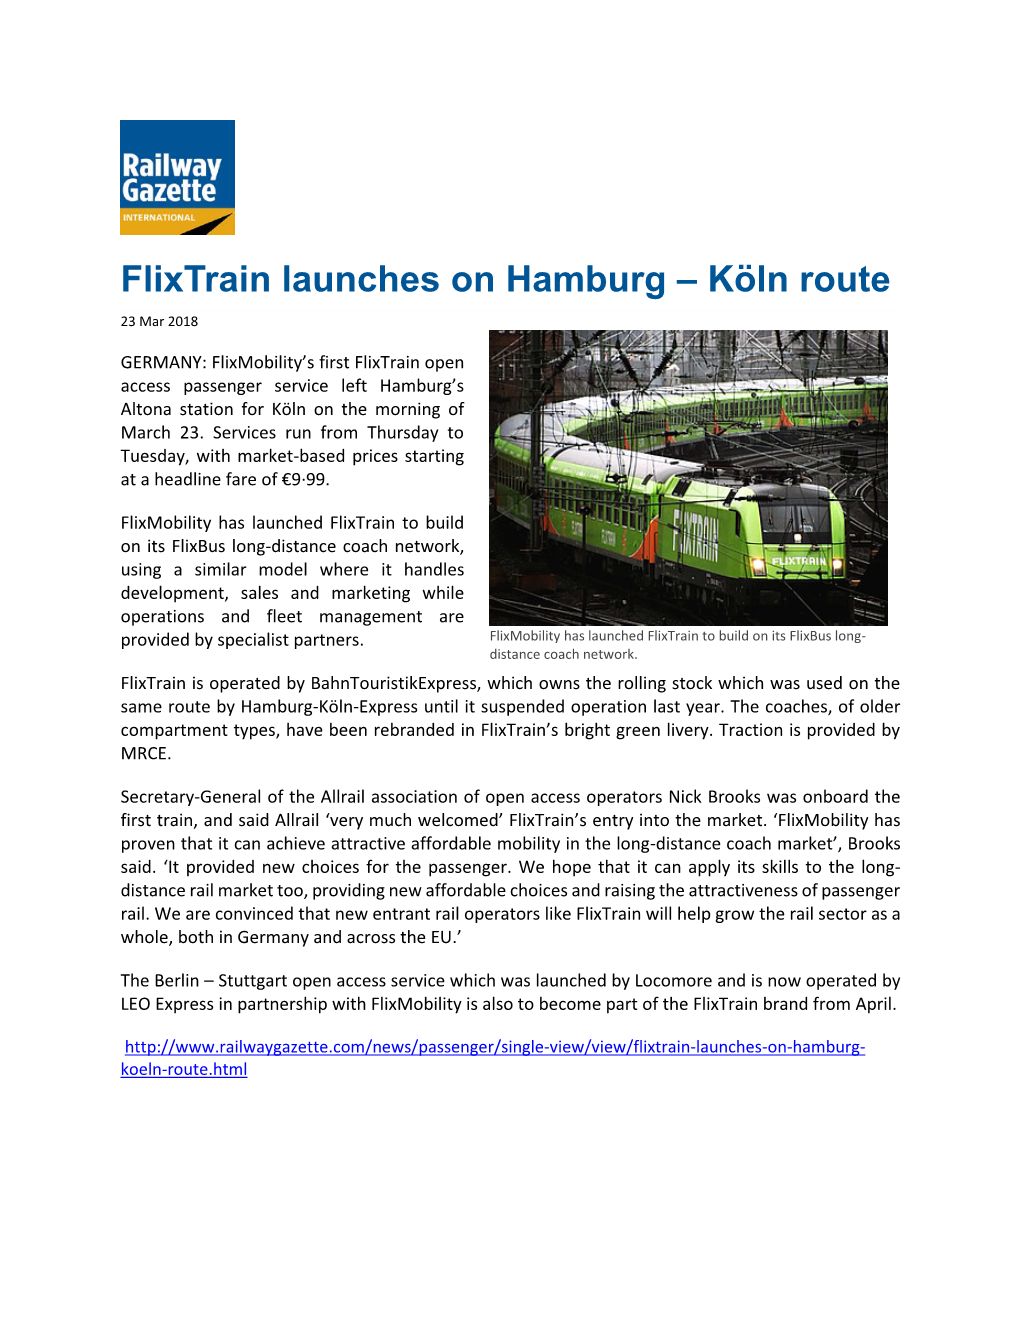 Flixtrain Launches on Hamburg – Köln Route 23 Mar 2018